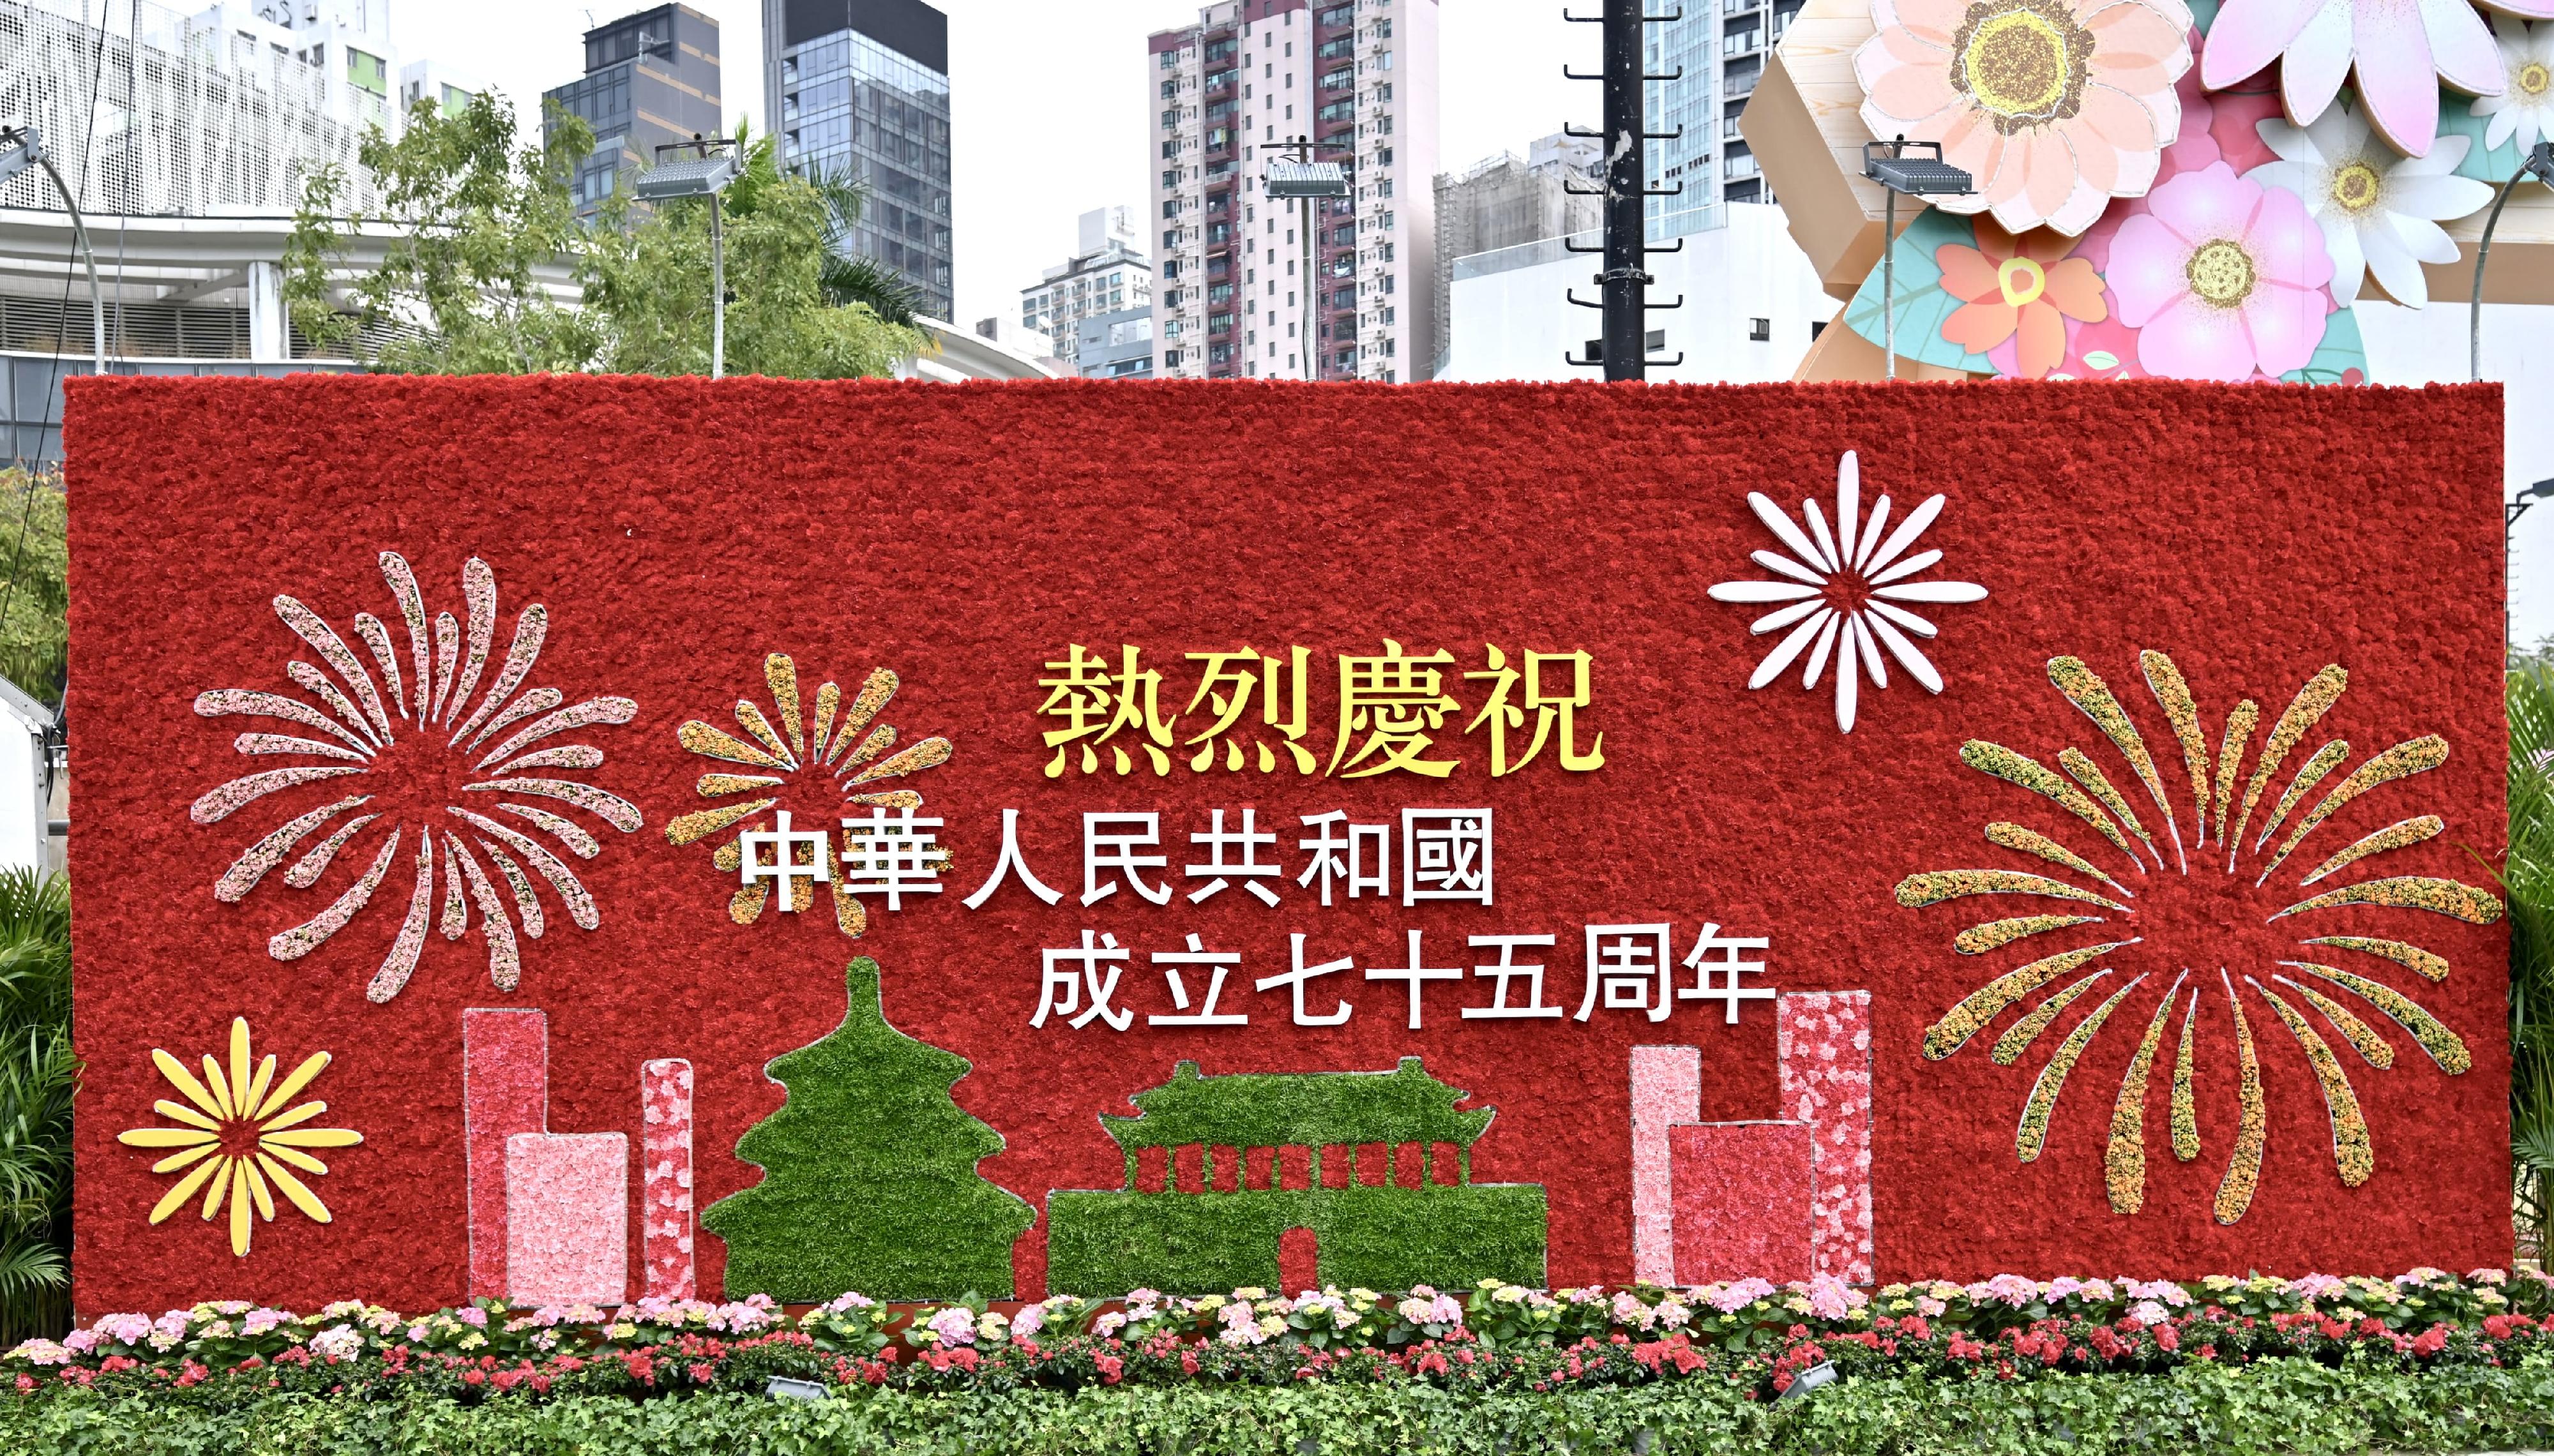 每年一度的賞花盛事香港花卉展覽今日（三月十五日）在維多利亞公園開幕，展出約四十二萬株花卉，包括約四萬株主題花香彩雀。為慶祝中華人民共和國成立七十五周年，花展的興發街入口設置康乃馨主題花牆，以誌其盛。